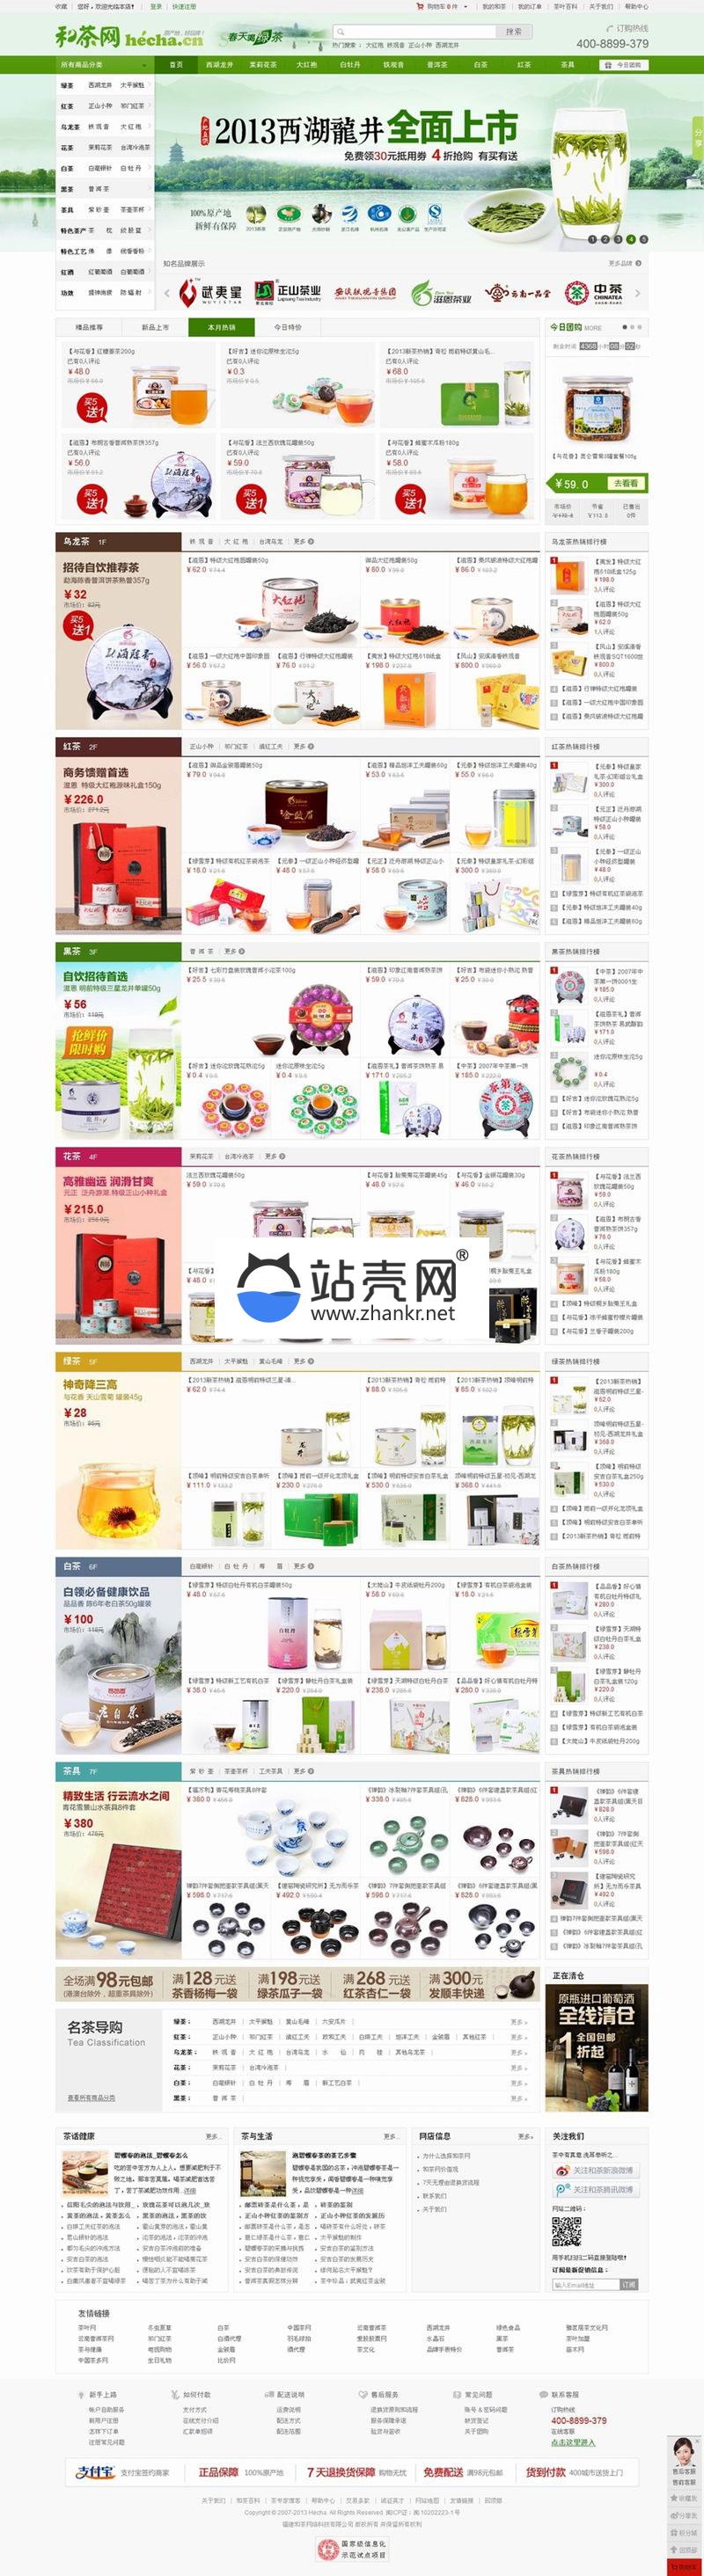 ECSHOP仿和茶网模板宽屏版 茶叶茶具水果保健品商城源码_源码下载